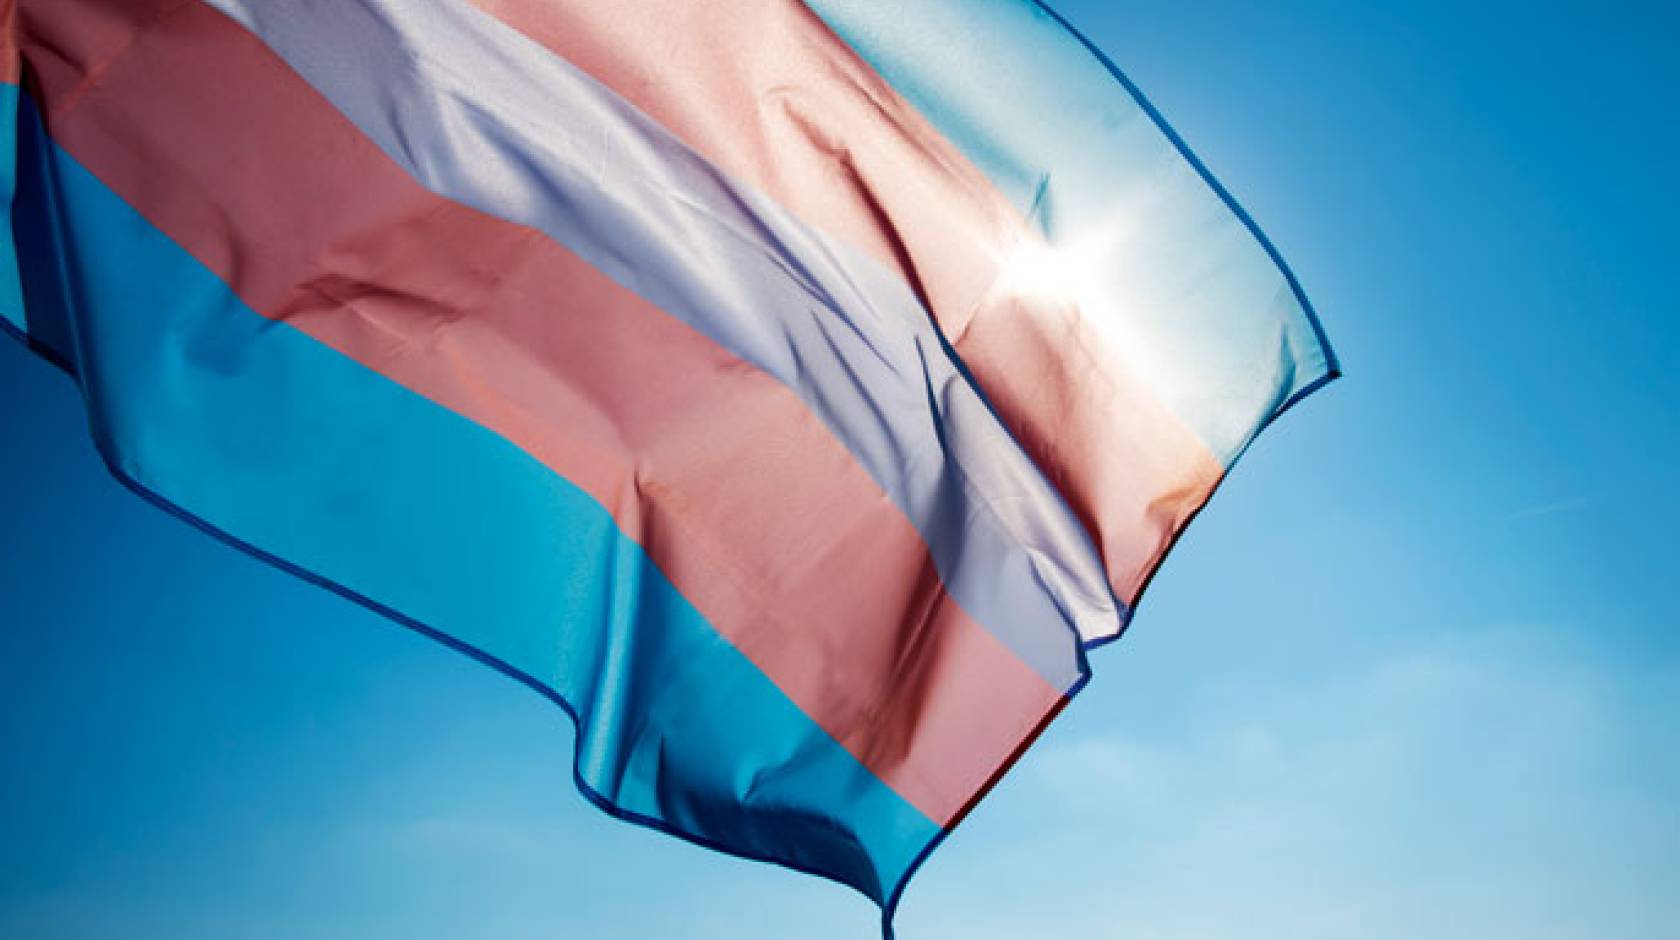 Trans flag flying